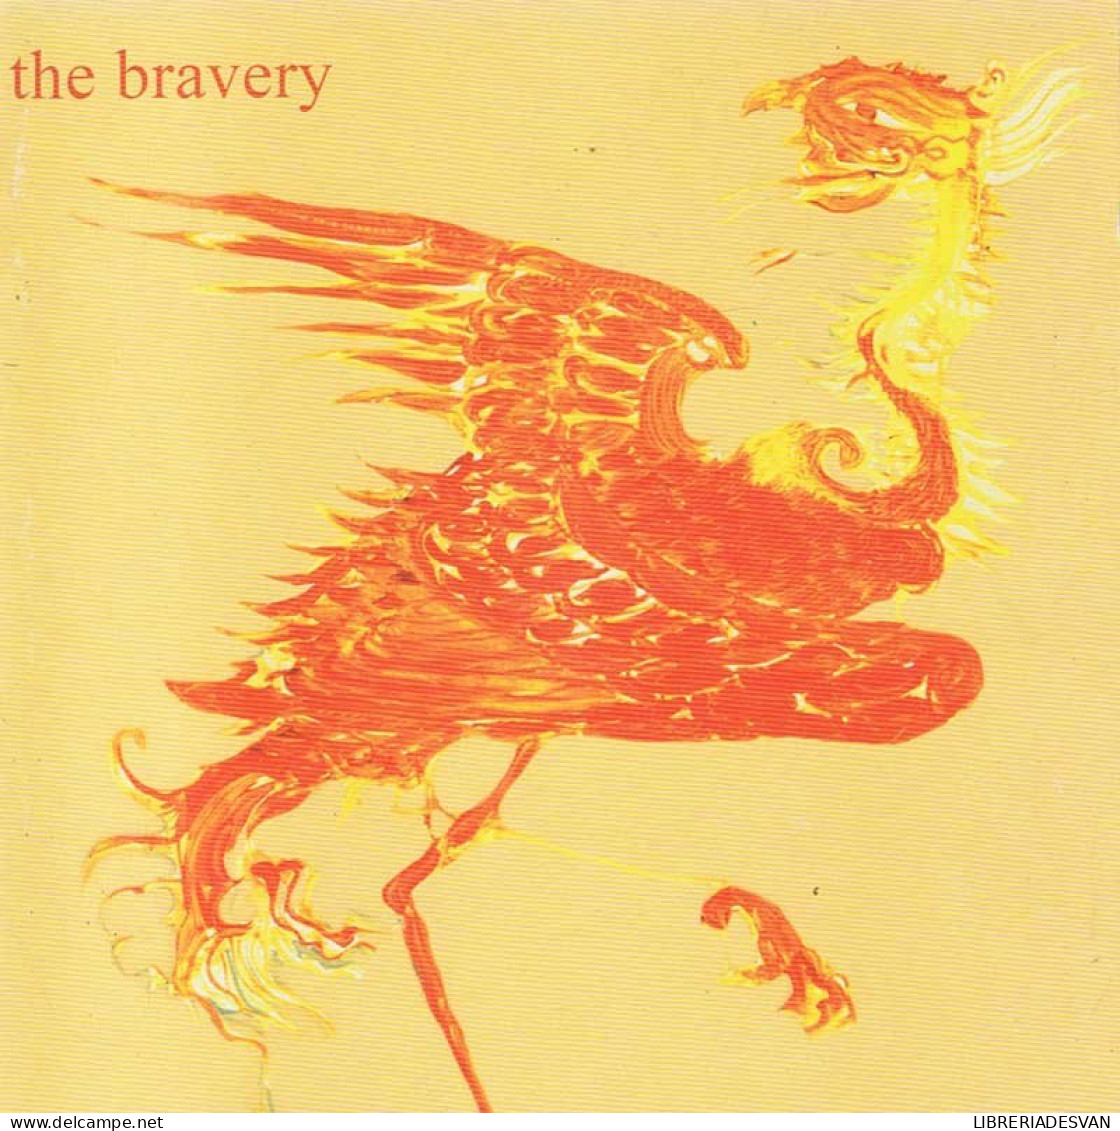 The Bravery - The Bravery. CD - Rock